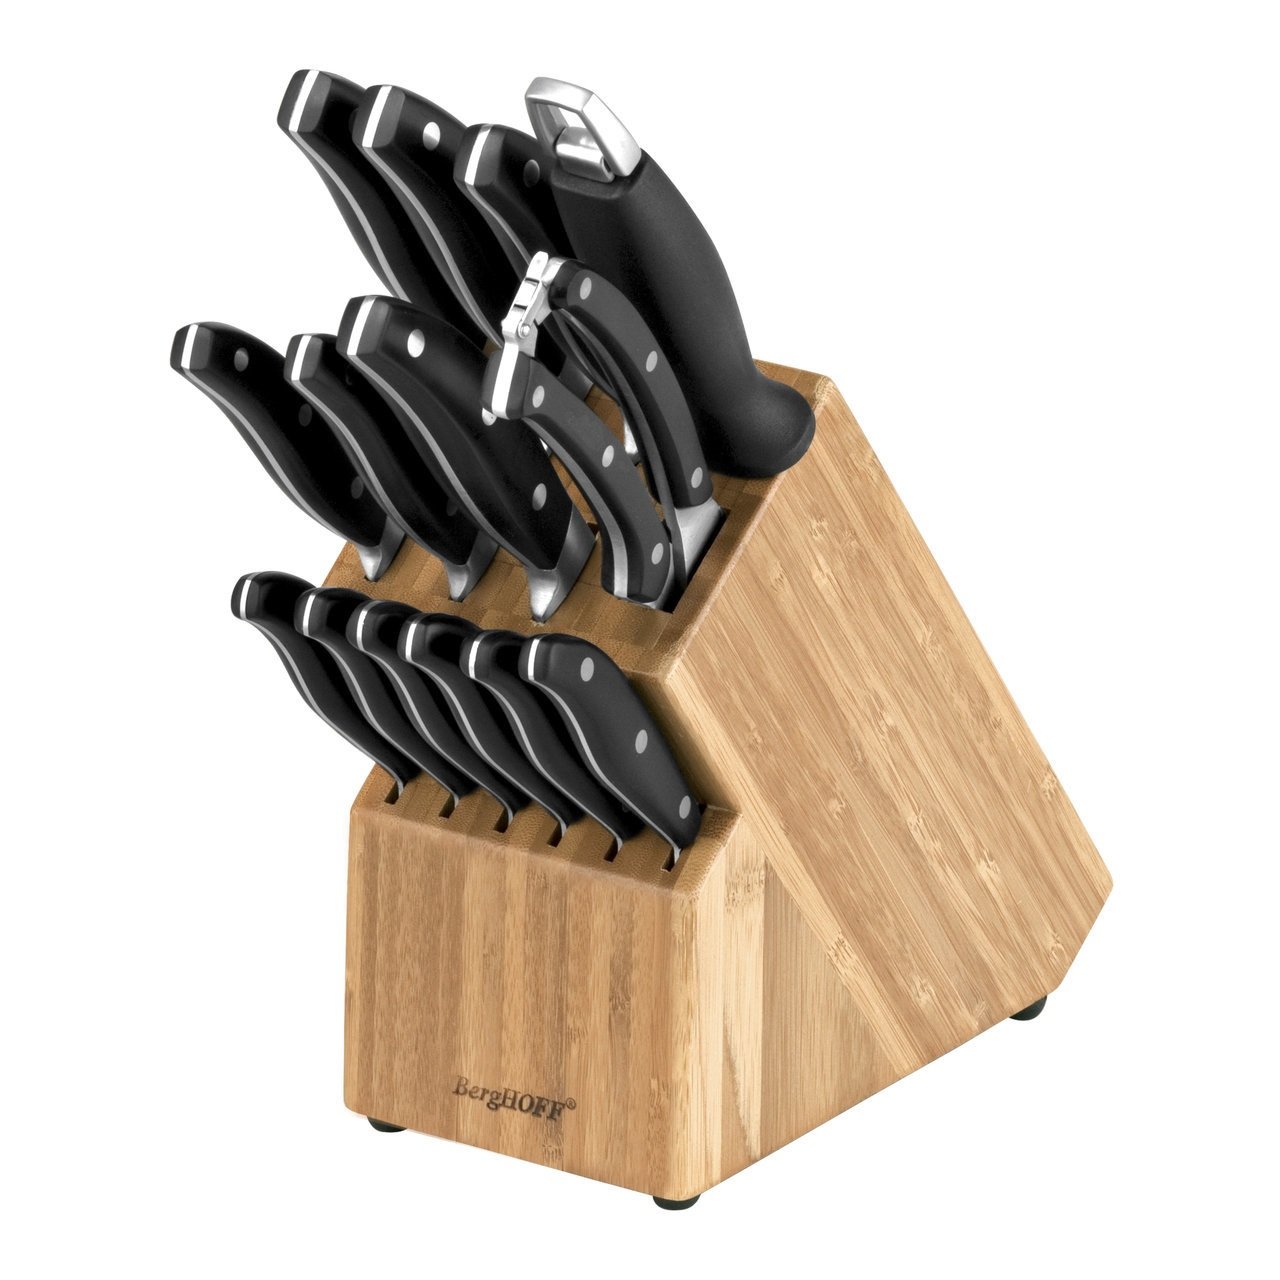 Недорогие кухонные ножи. Набор ножей 15 предметов BERGHOFF (1307144). Набор ножей Бергофф. BERGHOFF Essentials набор ножей 15 пр 1307144. Набор ножей Gipfel Baron 6665.